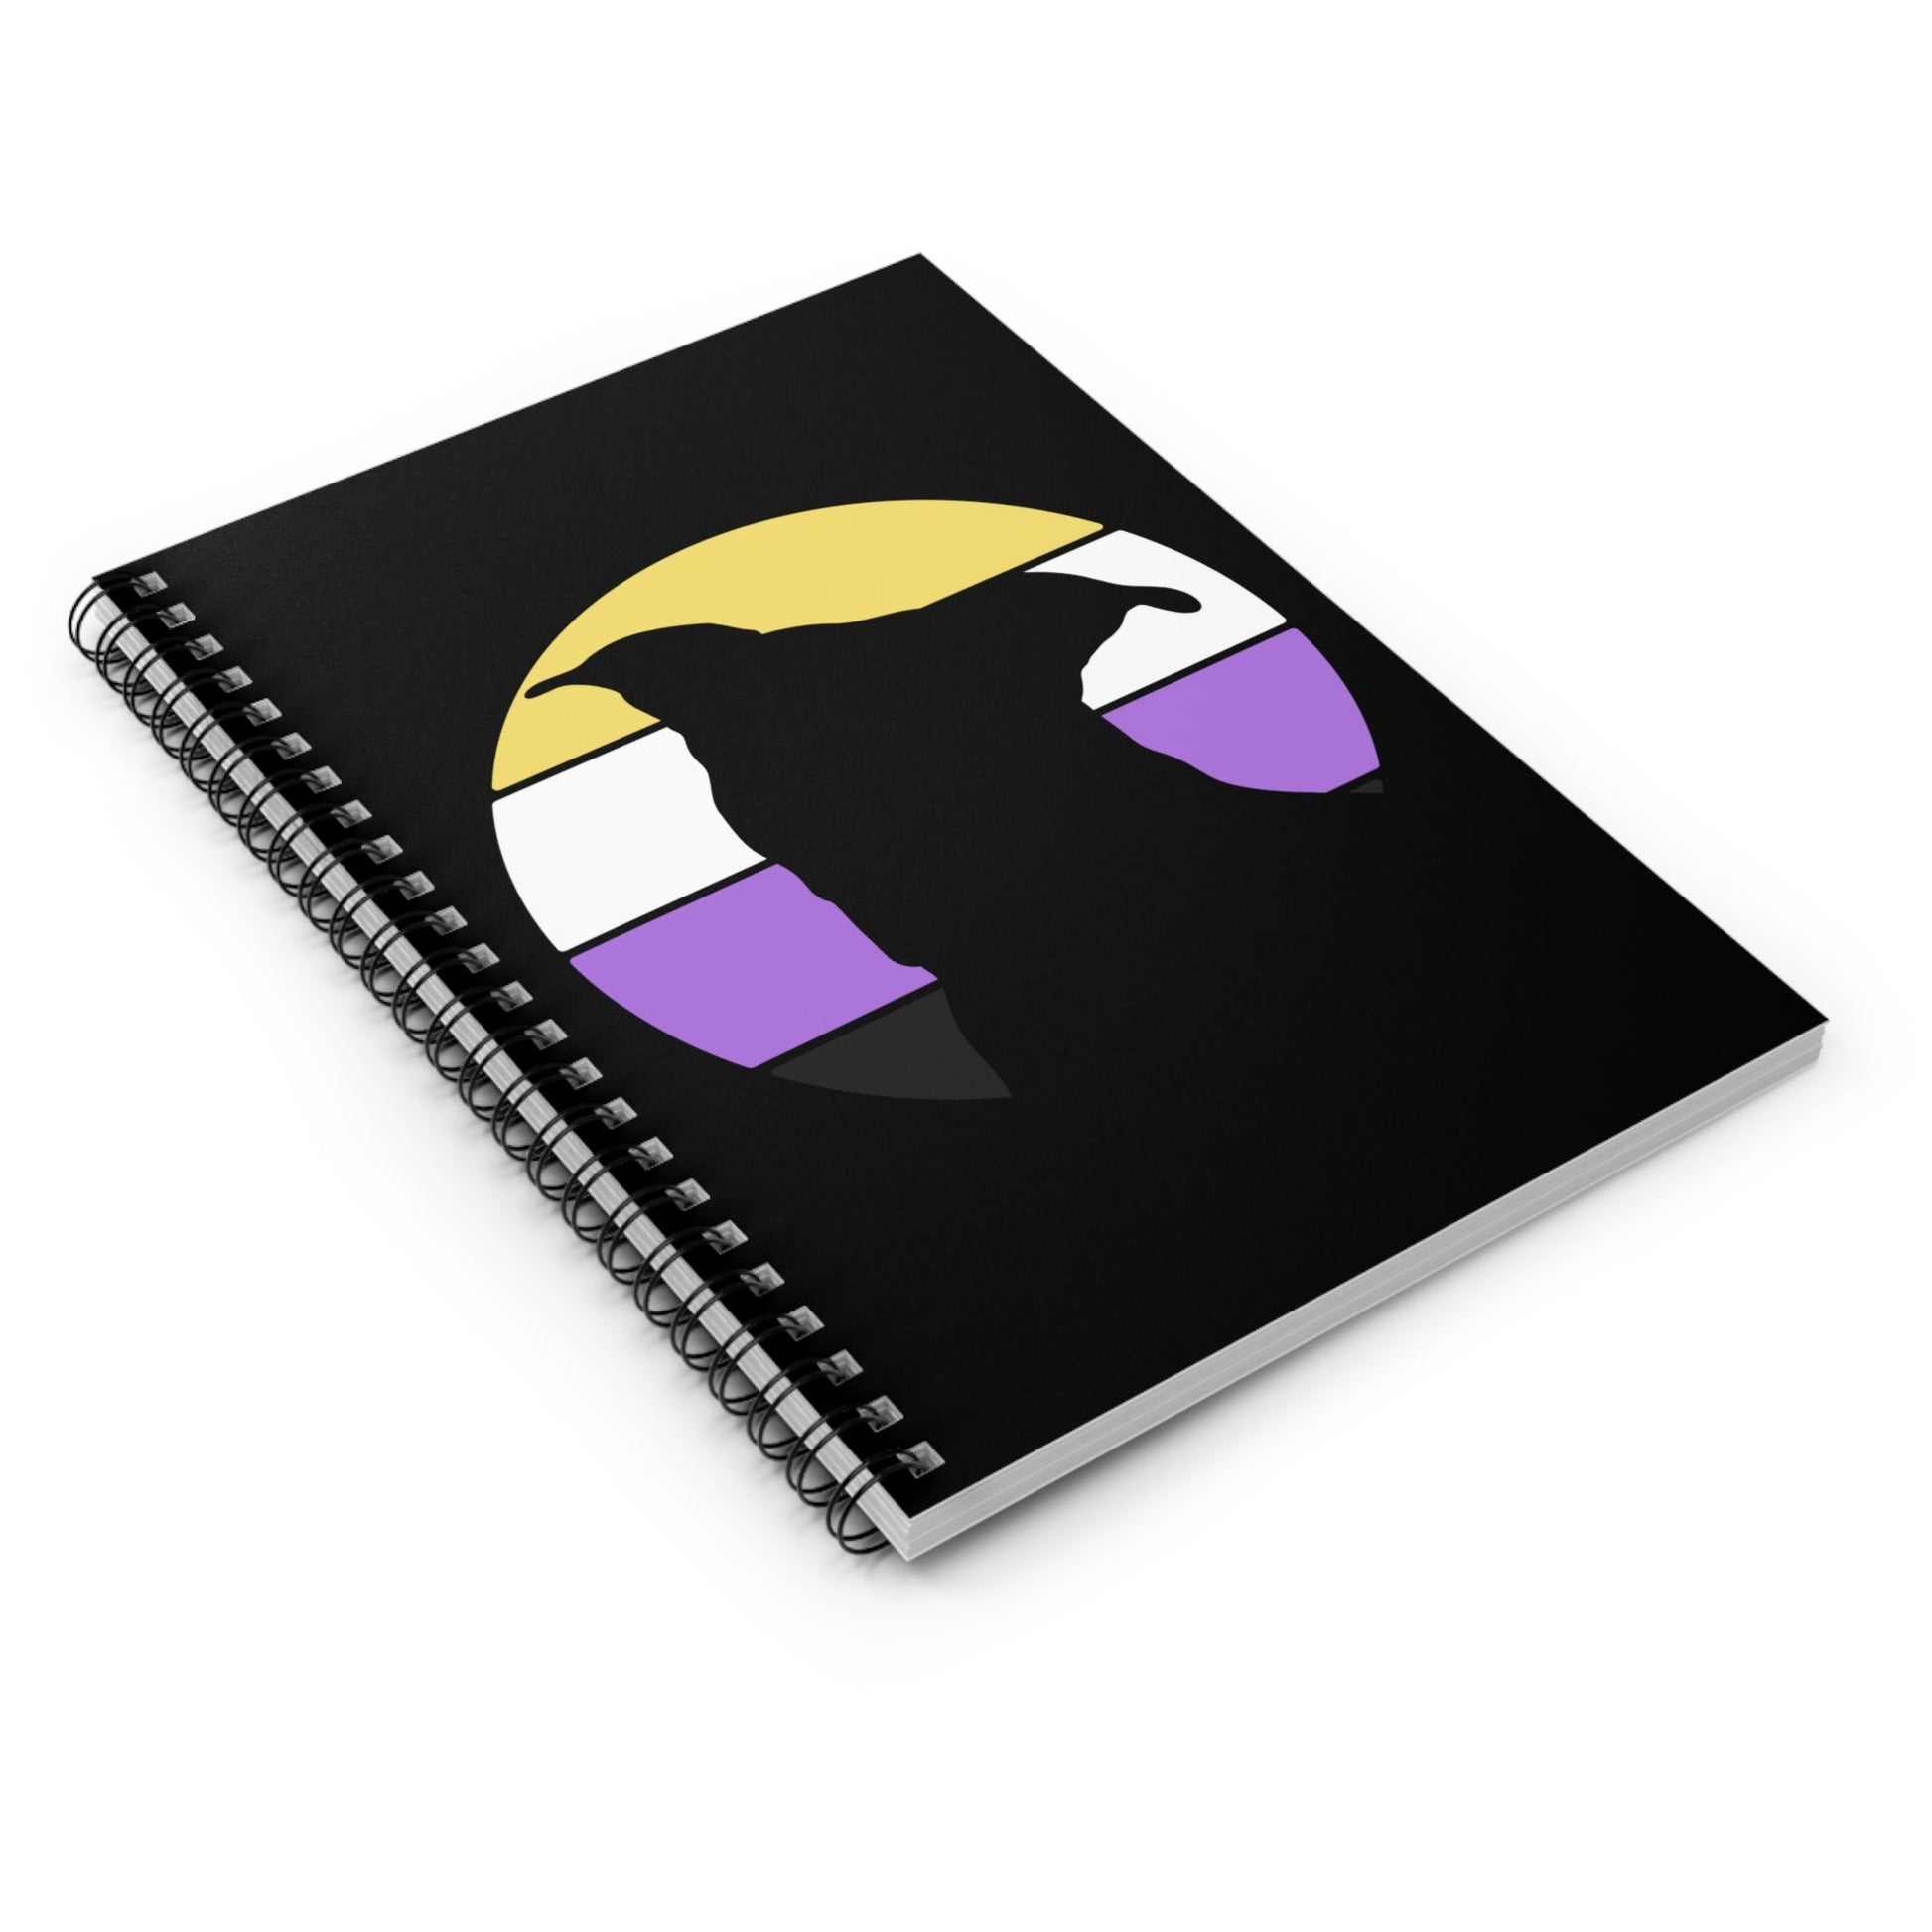 Nonbinary Pride | Pit Bull Silhouette | Notebook - Detezi Designs-28477370814549329233